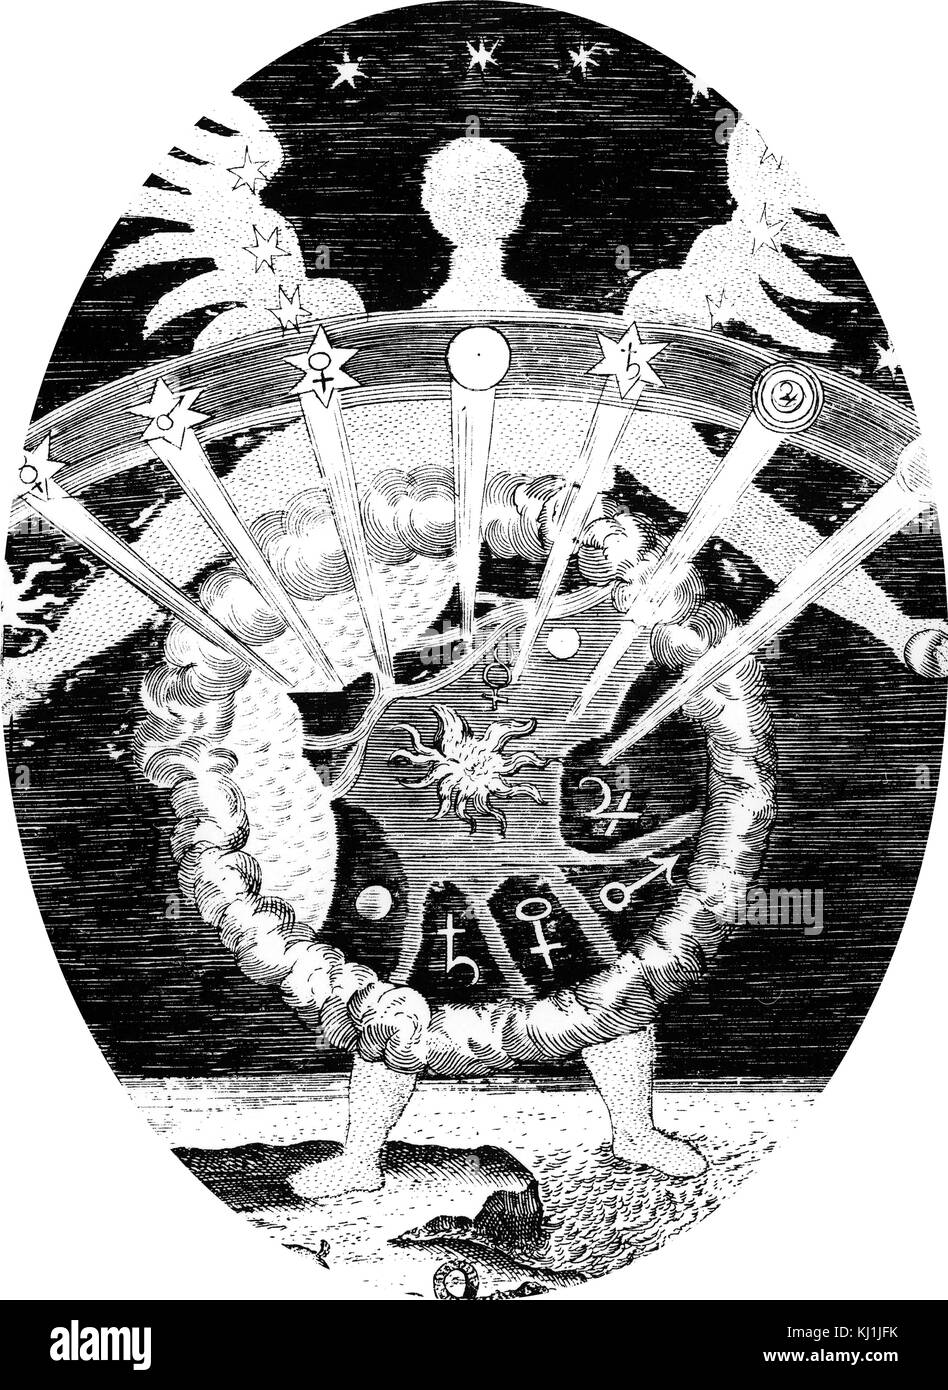 Titelblatt des ersten Buches von 'Magia Naturalis" (Der Ursachen von wunderbaren Dingen), zeigen die vier Elemente (Feuer, Wasser, Erde, Luft) und die sieben Planeten mit ihren zugehörigen Körpersäfte. Vom 16. Jahrhundert Stockfoto